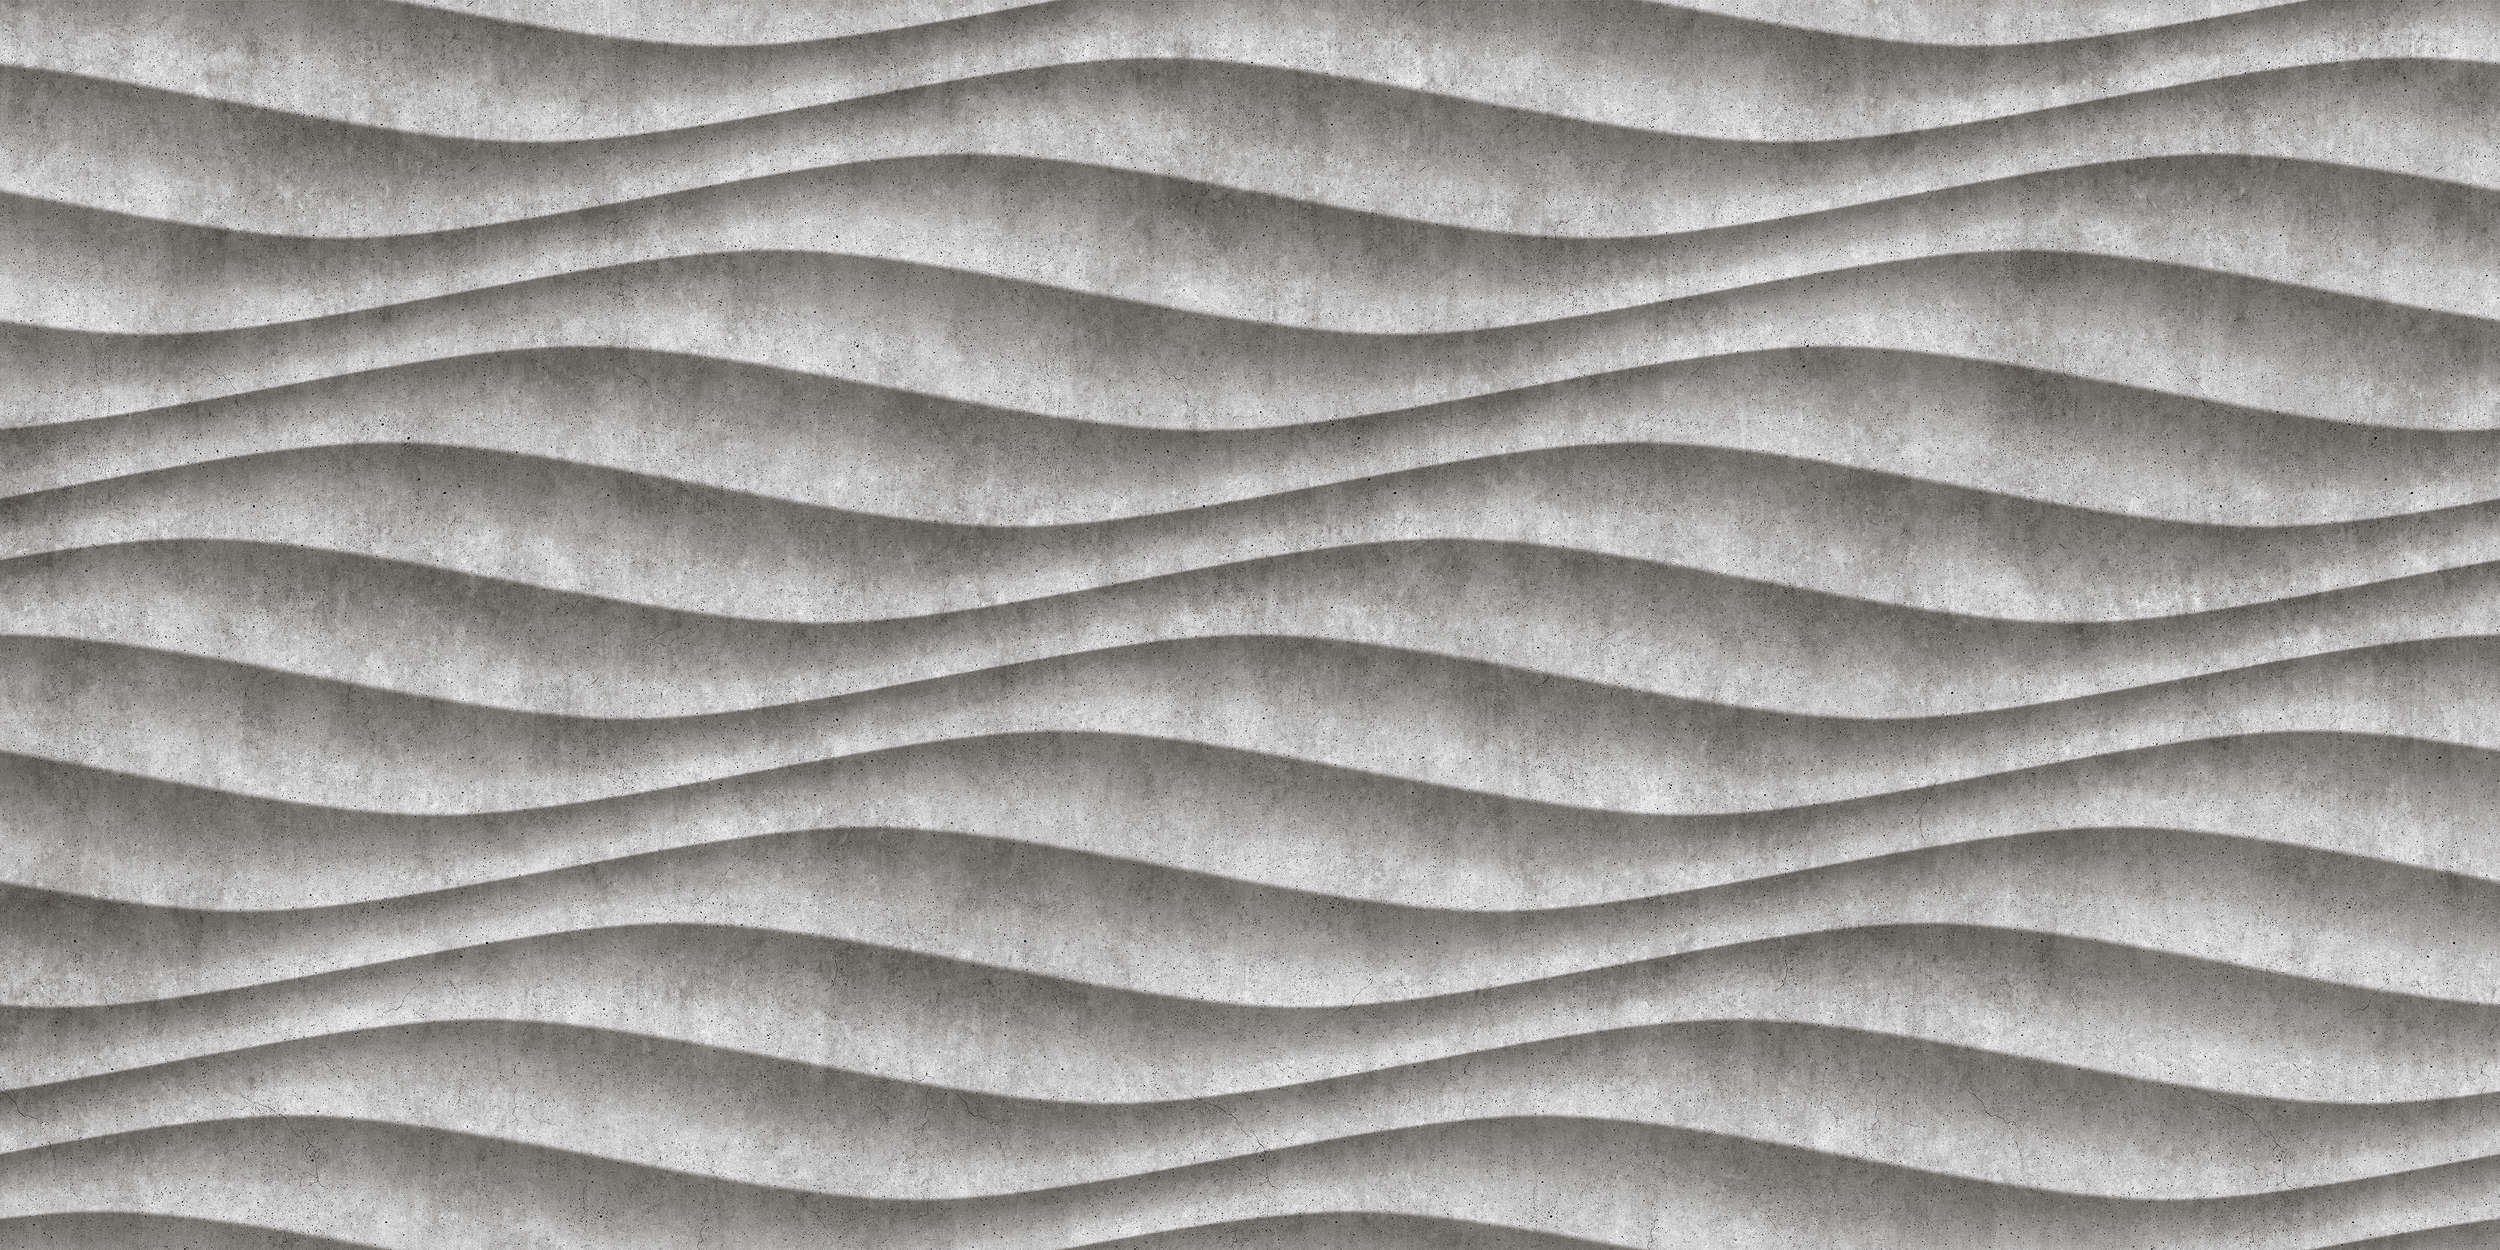             Canyon 2 - Cool 3D Concrete Waves Wallpaper - Grey, Black | Matt Smooth Non-woven
        